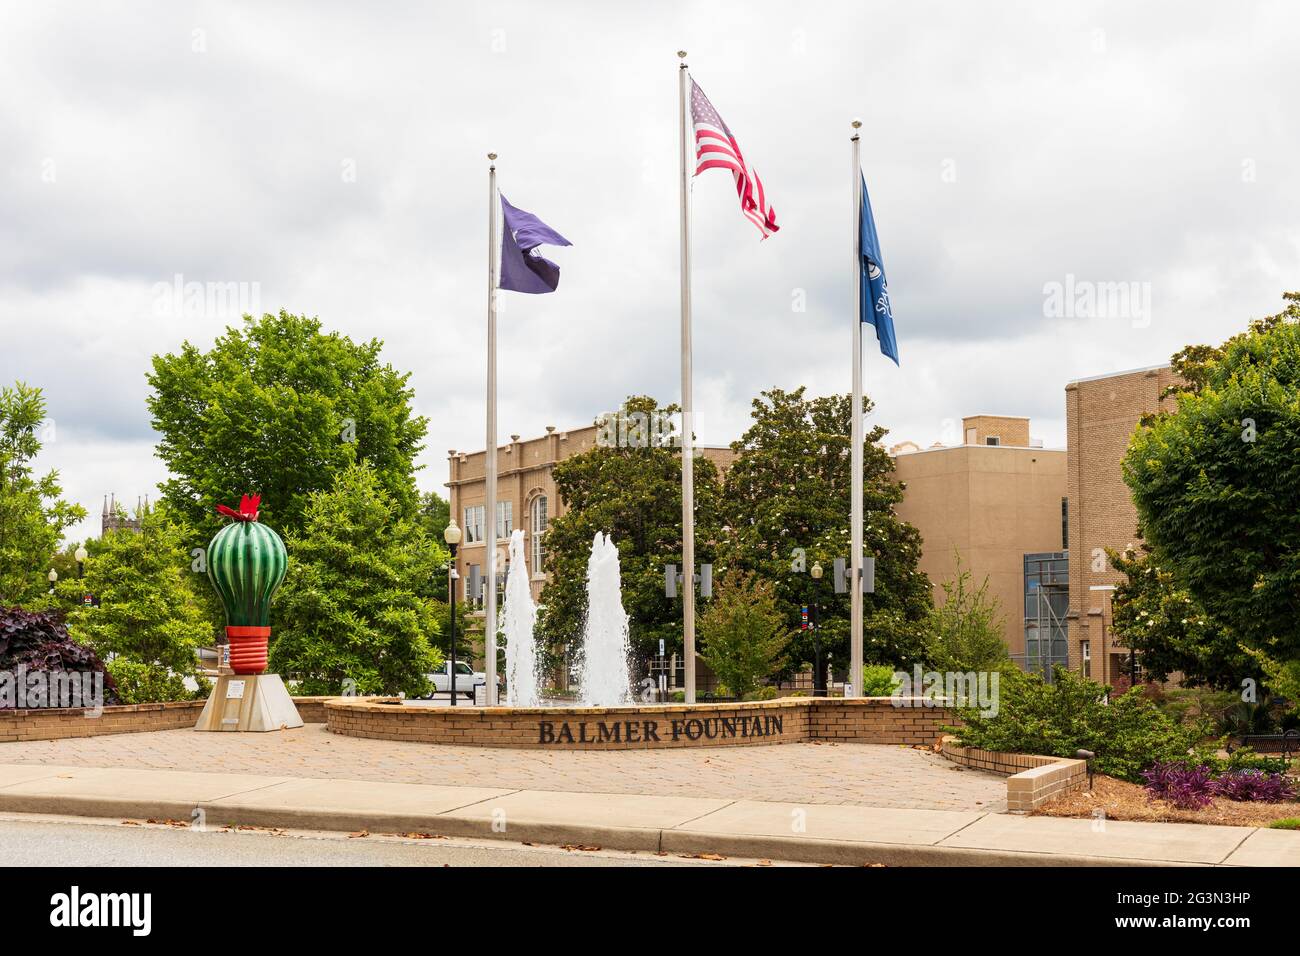 SPARTANBURG, SC, USA-13 JUNE 2021: Der Balmer-Brunnen, mit Fahnen und Skulpturen, auf dem Campus des Spartanburg Community College, Campus in der Innenstadt. H Stockfoto